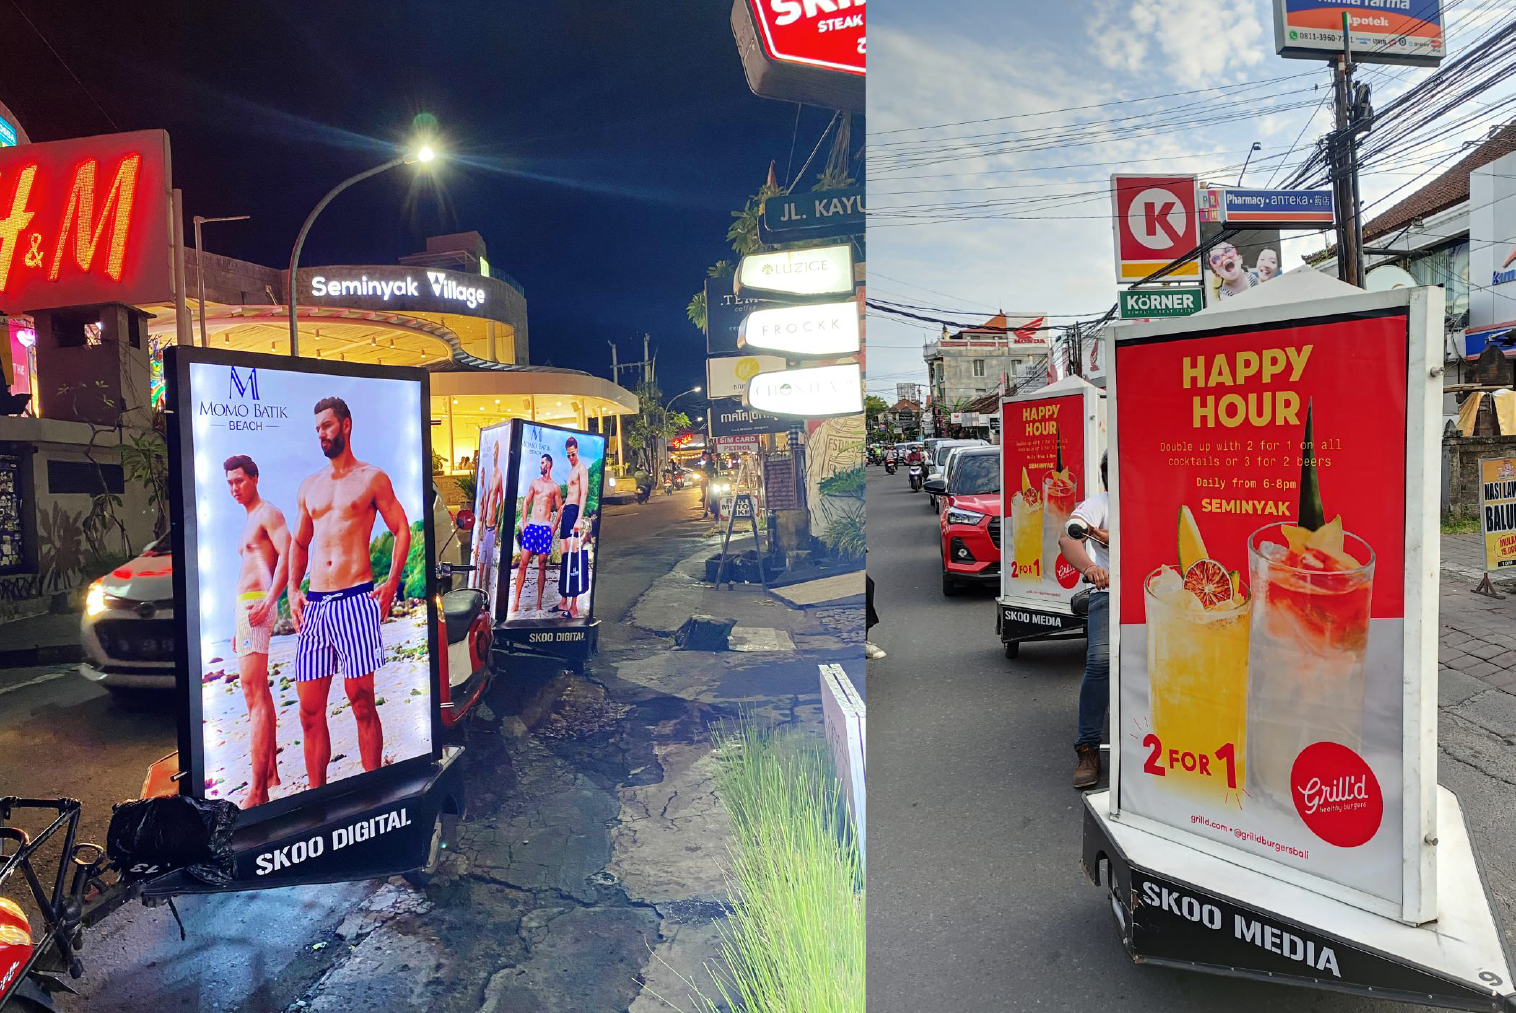 skoo media's mobile advertising vehicles and satisfied customers